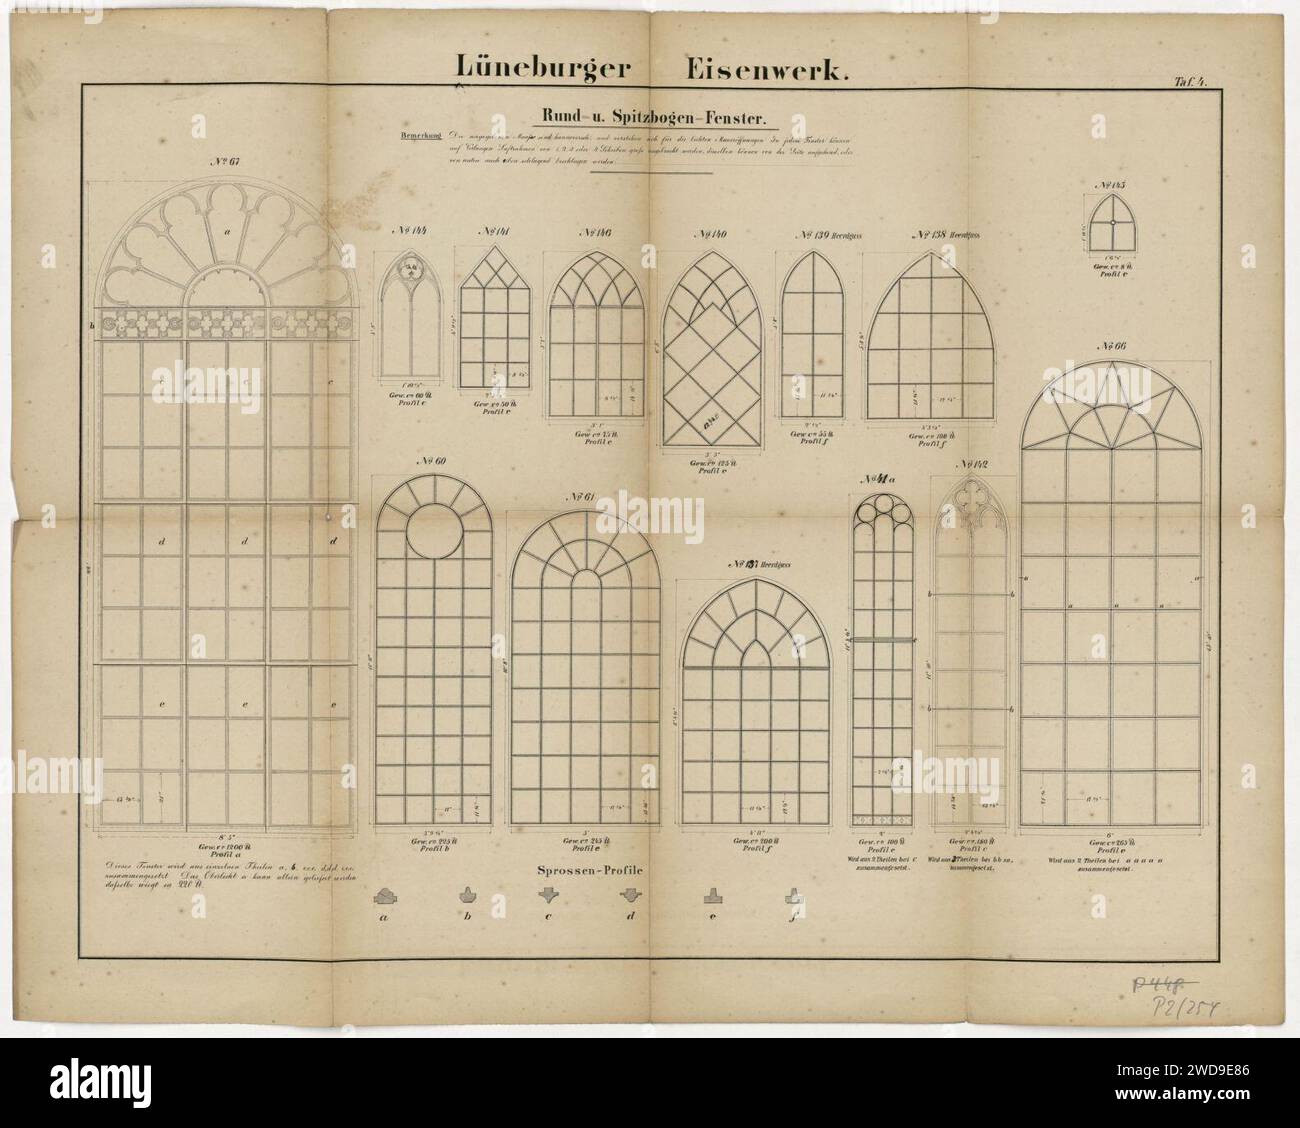 1890er Jahre circa Lüneburger Eisenwerk Tafel 4 Zeichnungen Rund-und Spitzbogenfenster, Stadtarchiv Duderstadt, Kulturerbe Niedersachsen. Stock Photo